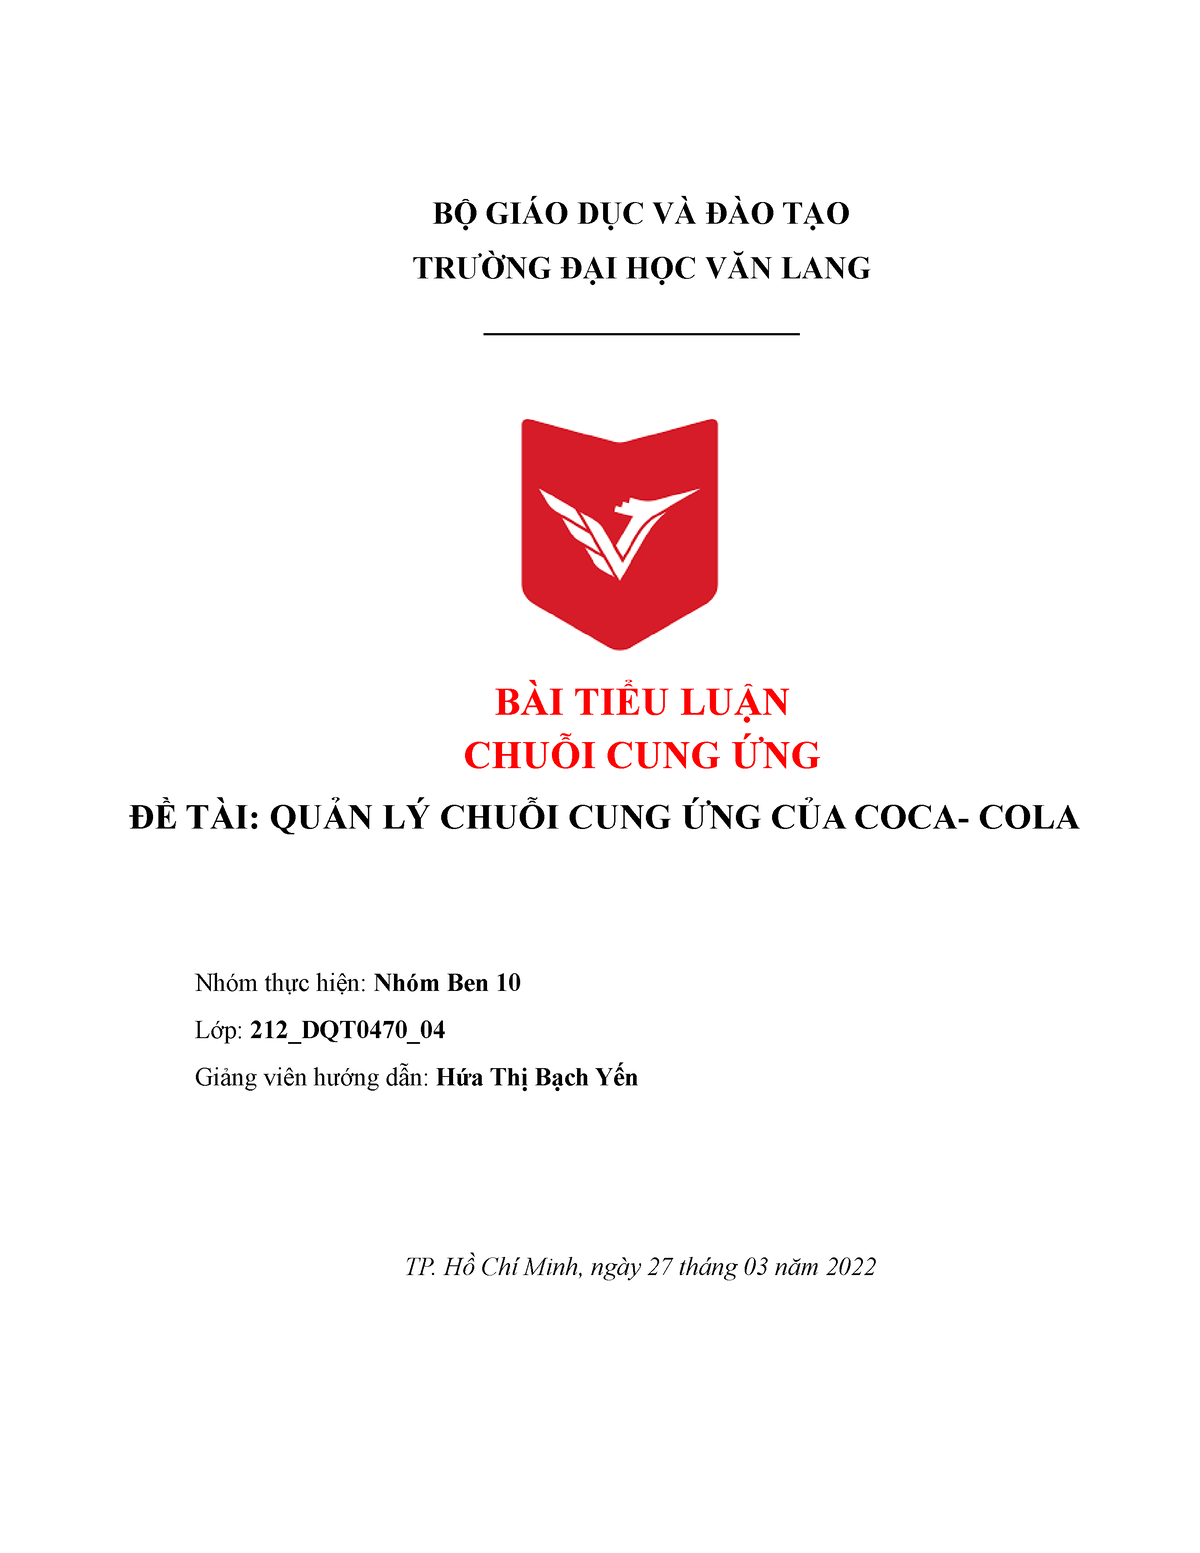 Bài tập nhóm Ben10 Tiểu luận về quản lí chuỗi cung ứng của Coca Cola  BỘ  GIÁO DỤC VÀ ĐÀO TẠO  Studocu